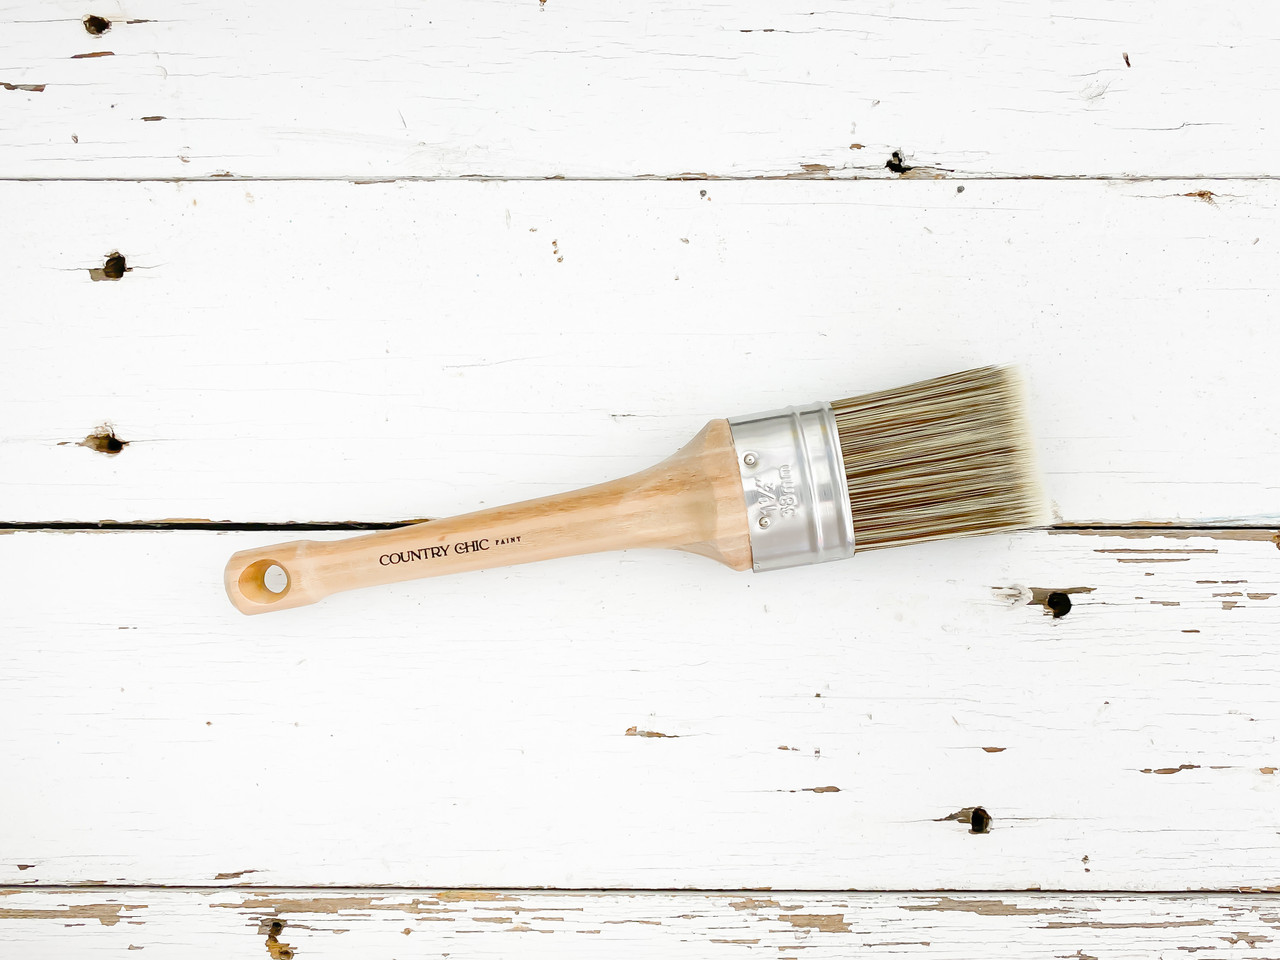 Major Brushes Soft Synthetic Blending Artist Paintbrush - WASH 1.5 / 38mm